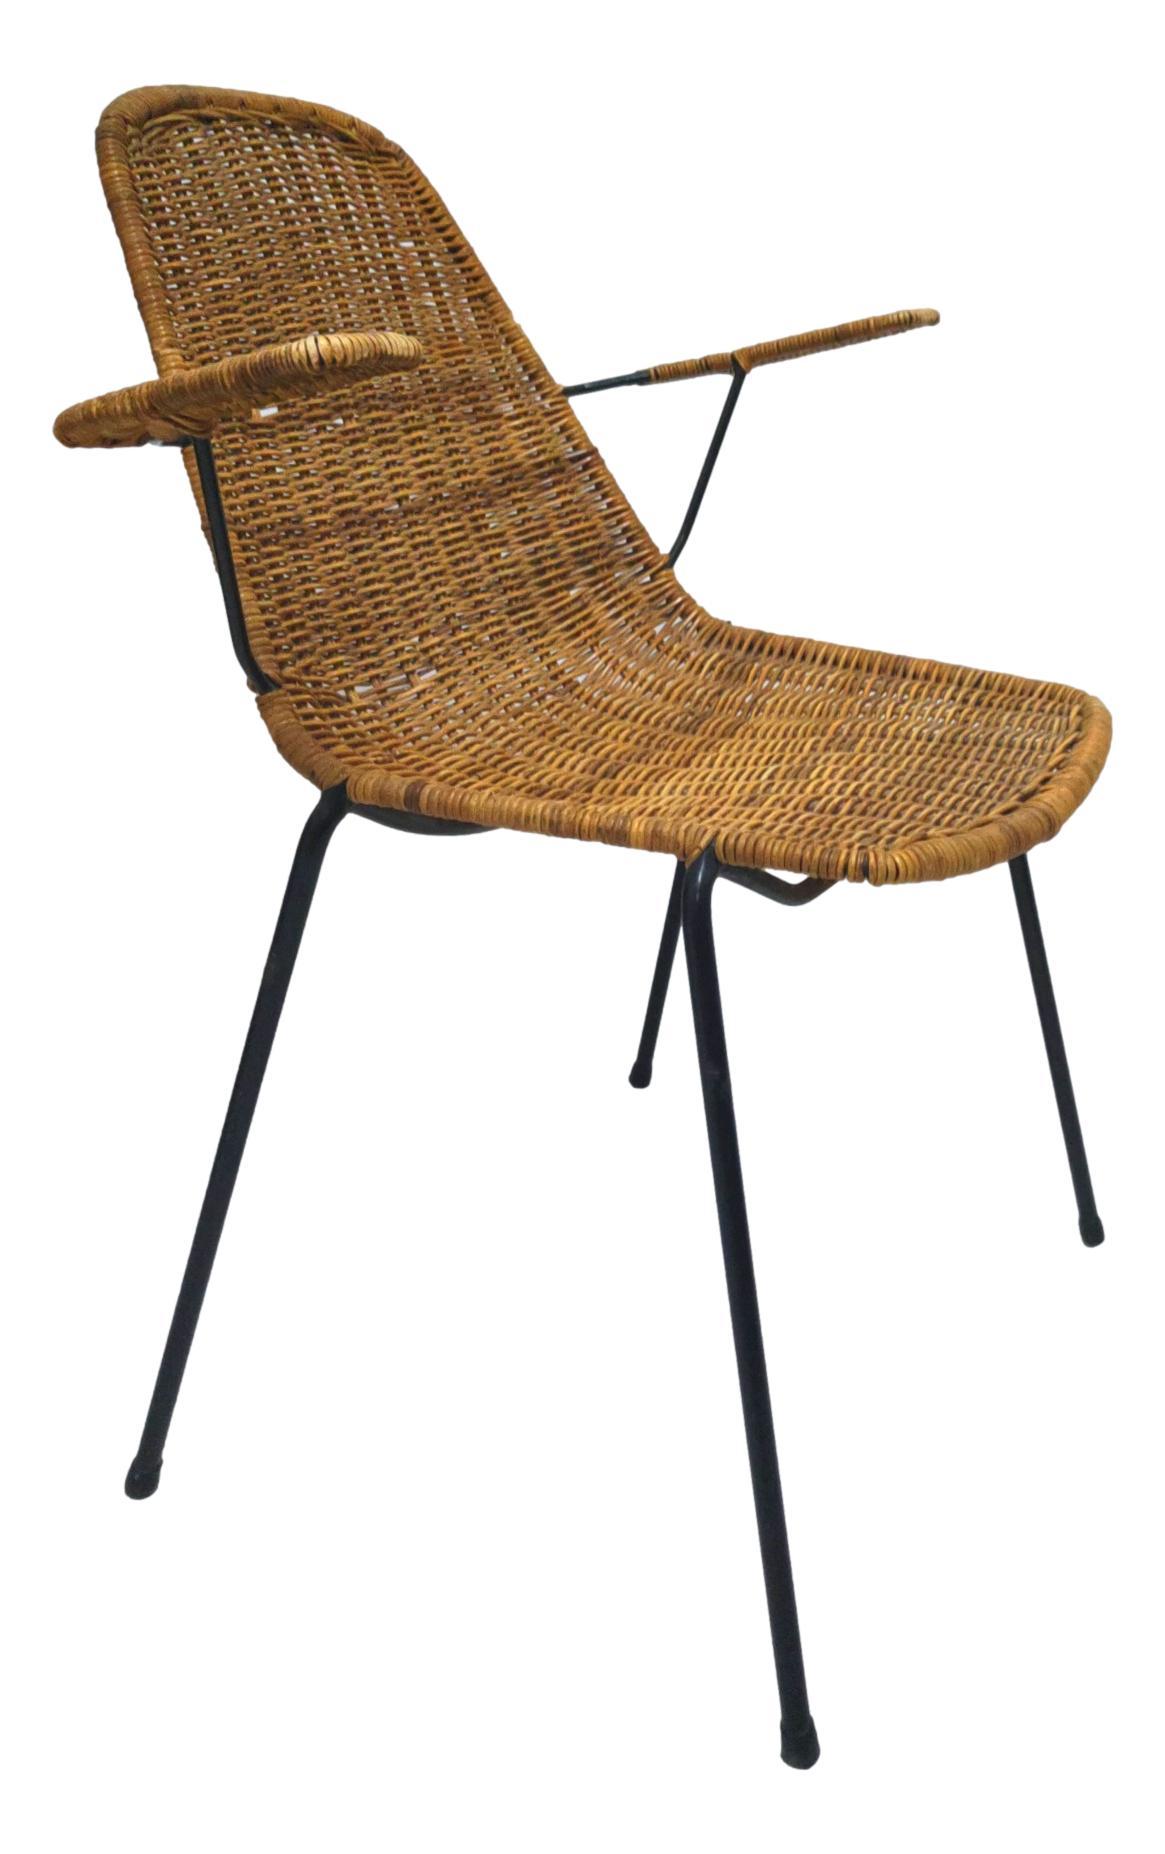 basket chair in wicker 1950s design franco campo & carlo graffi In Good Condition In taranto, IT